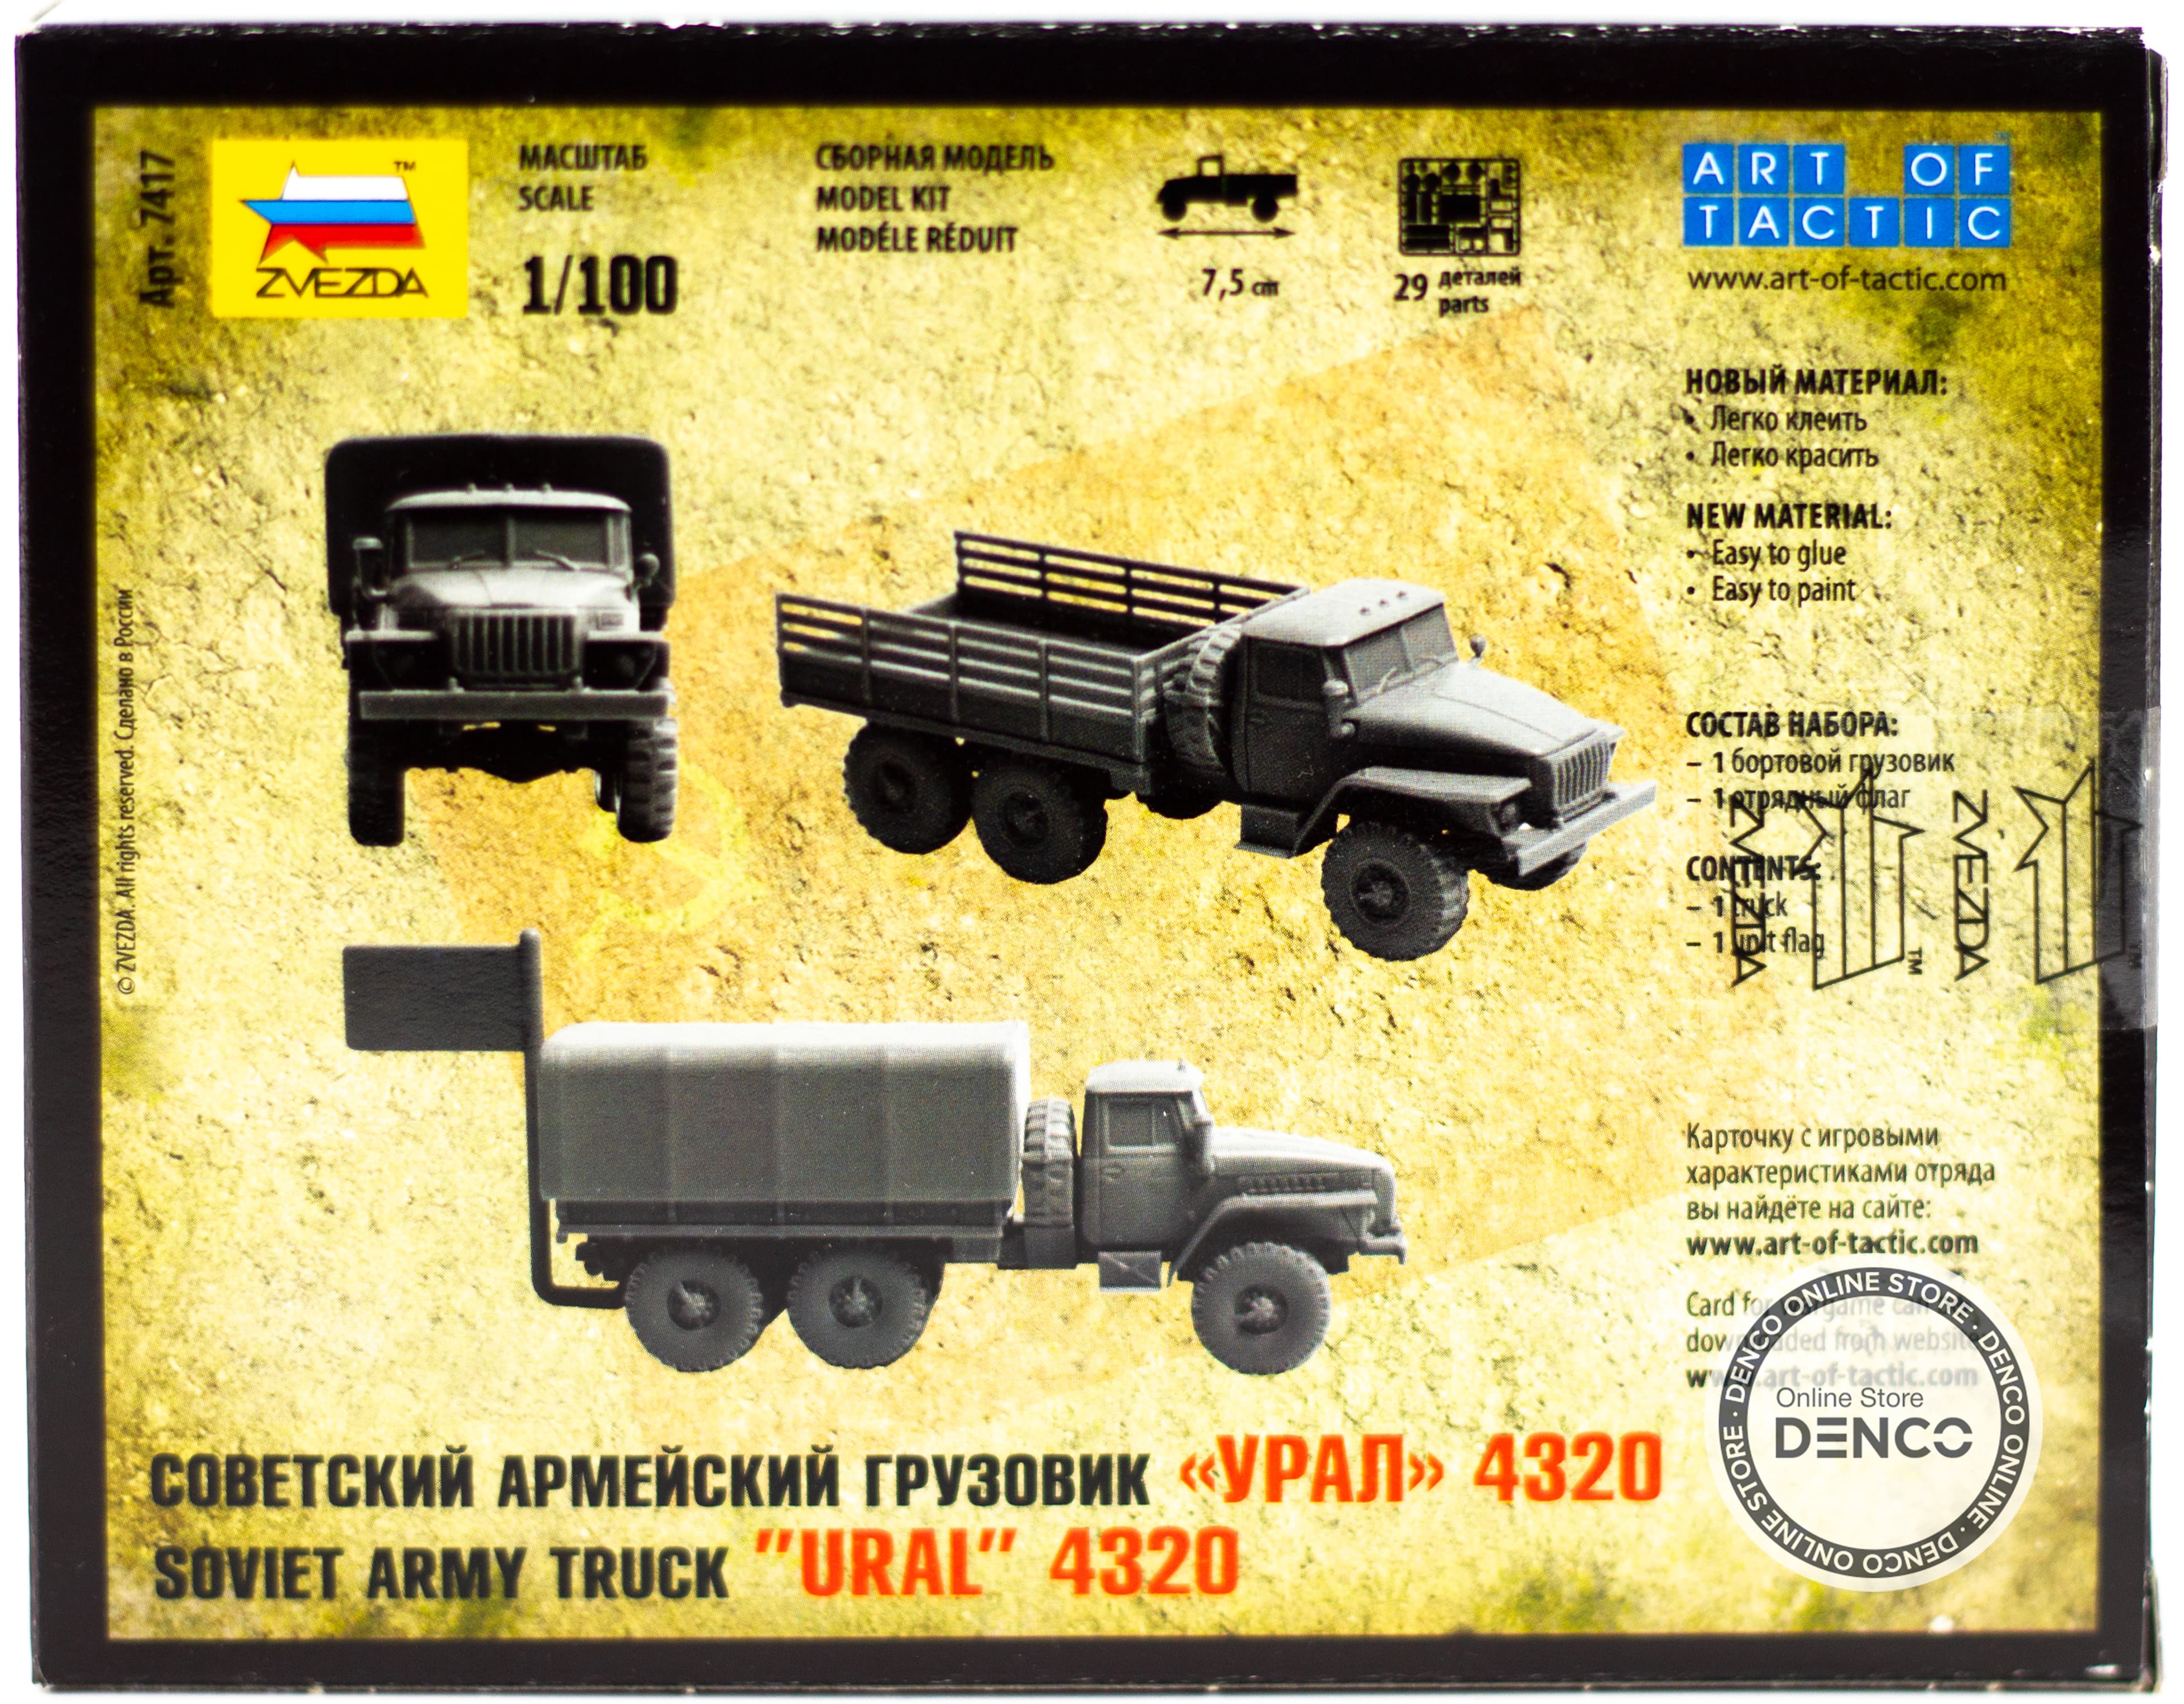 Сборная модель Zvezda 1:100 «Российский армейский грузовик Урал-4320» 7417, Art of Tactic Hot War